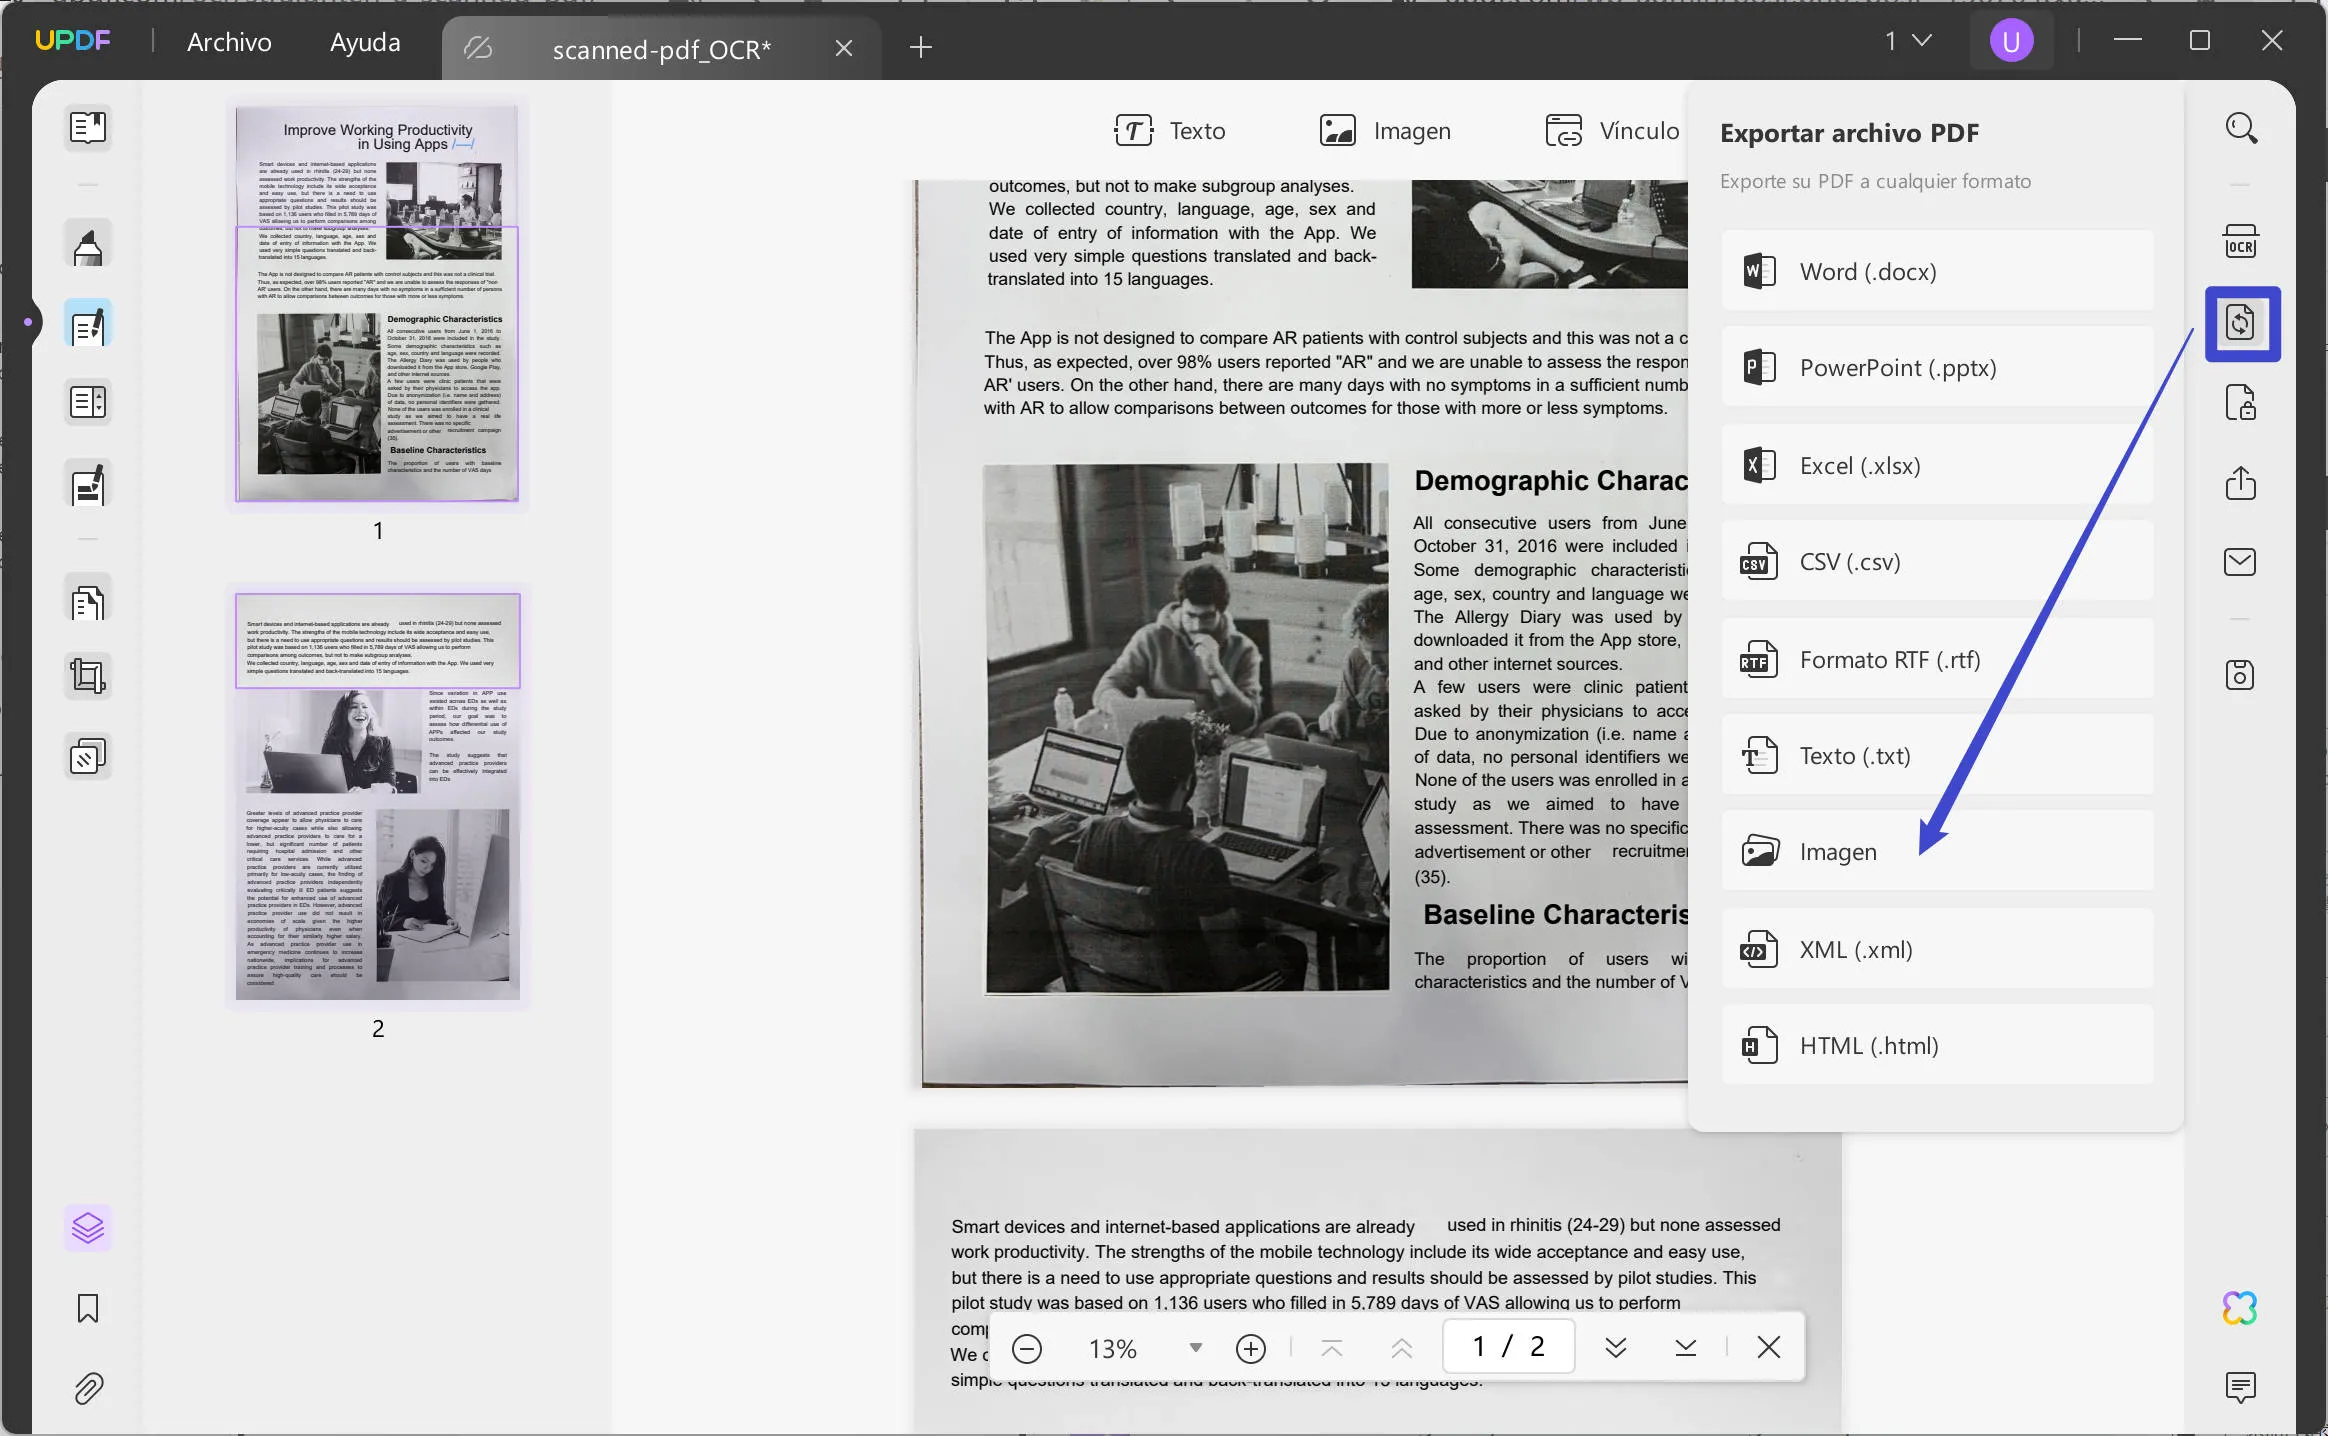 Enderezar un PDF escaneado y convertir un PDF escaneado en imágenes con UPDF